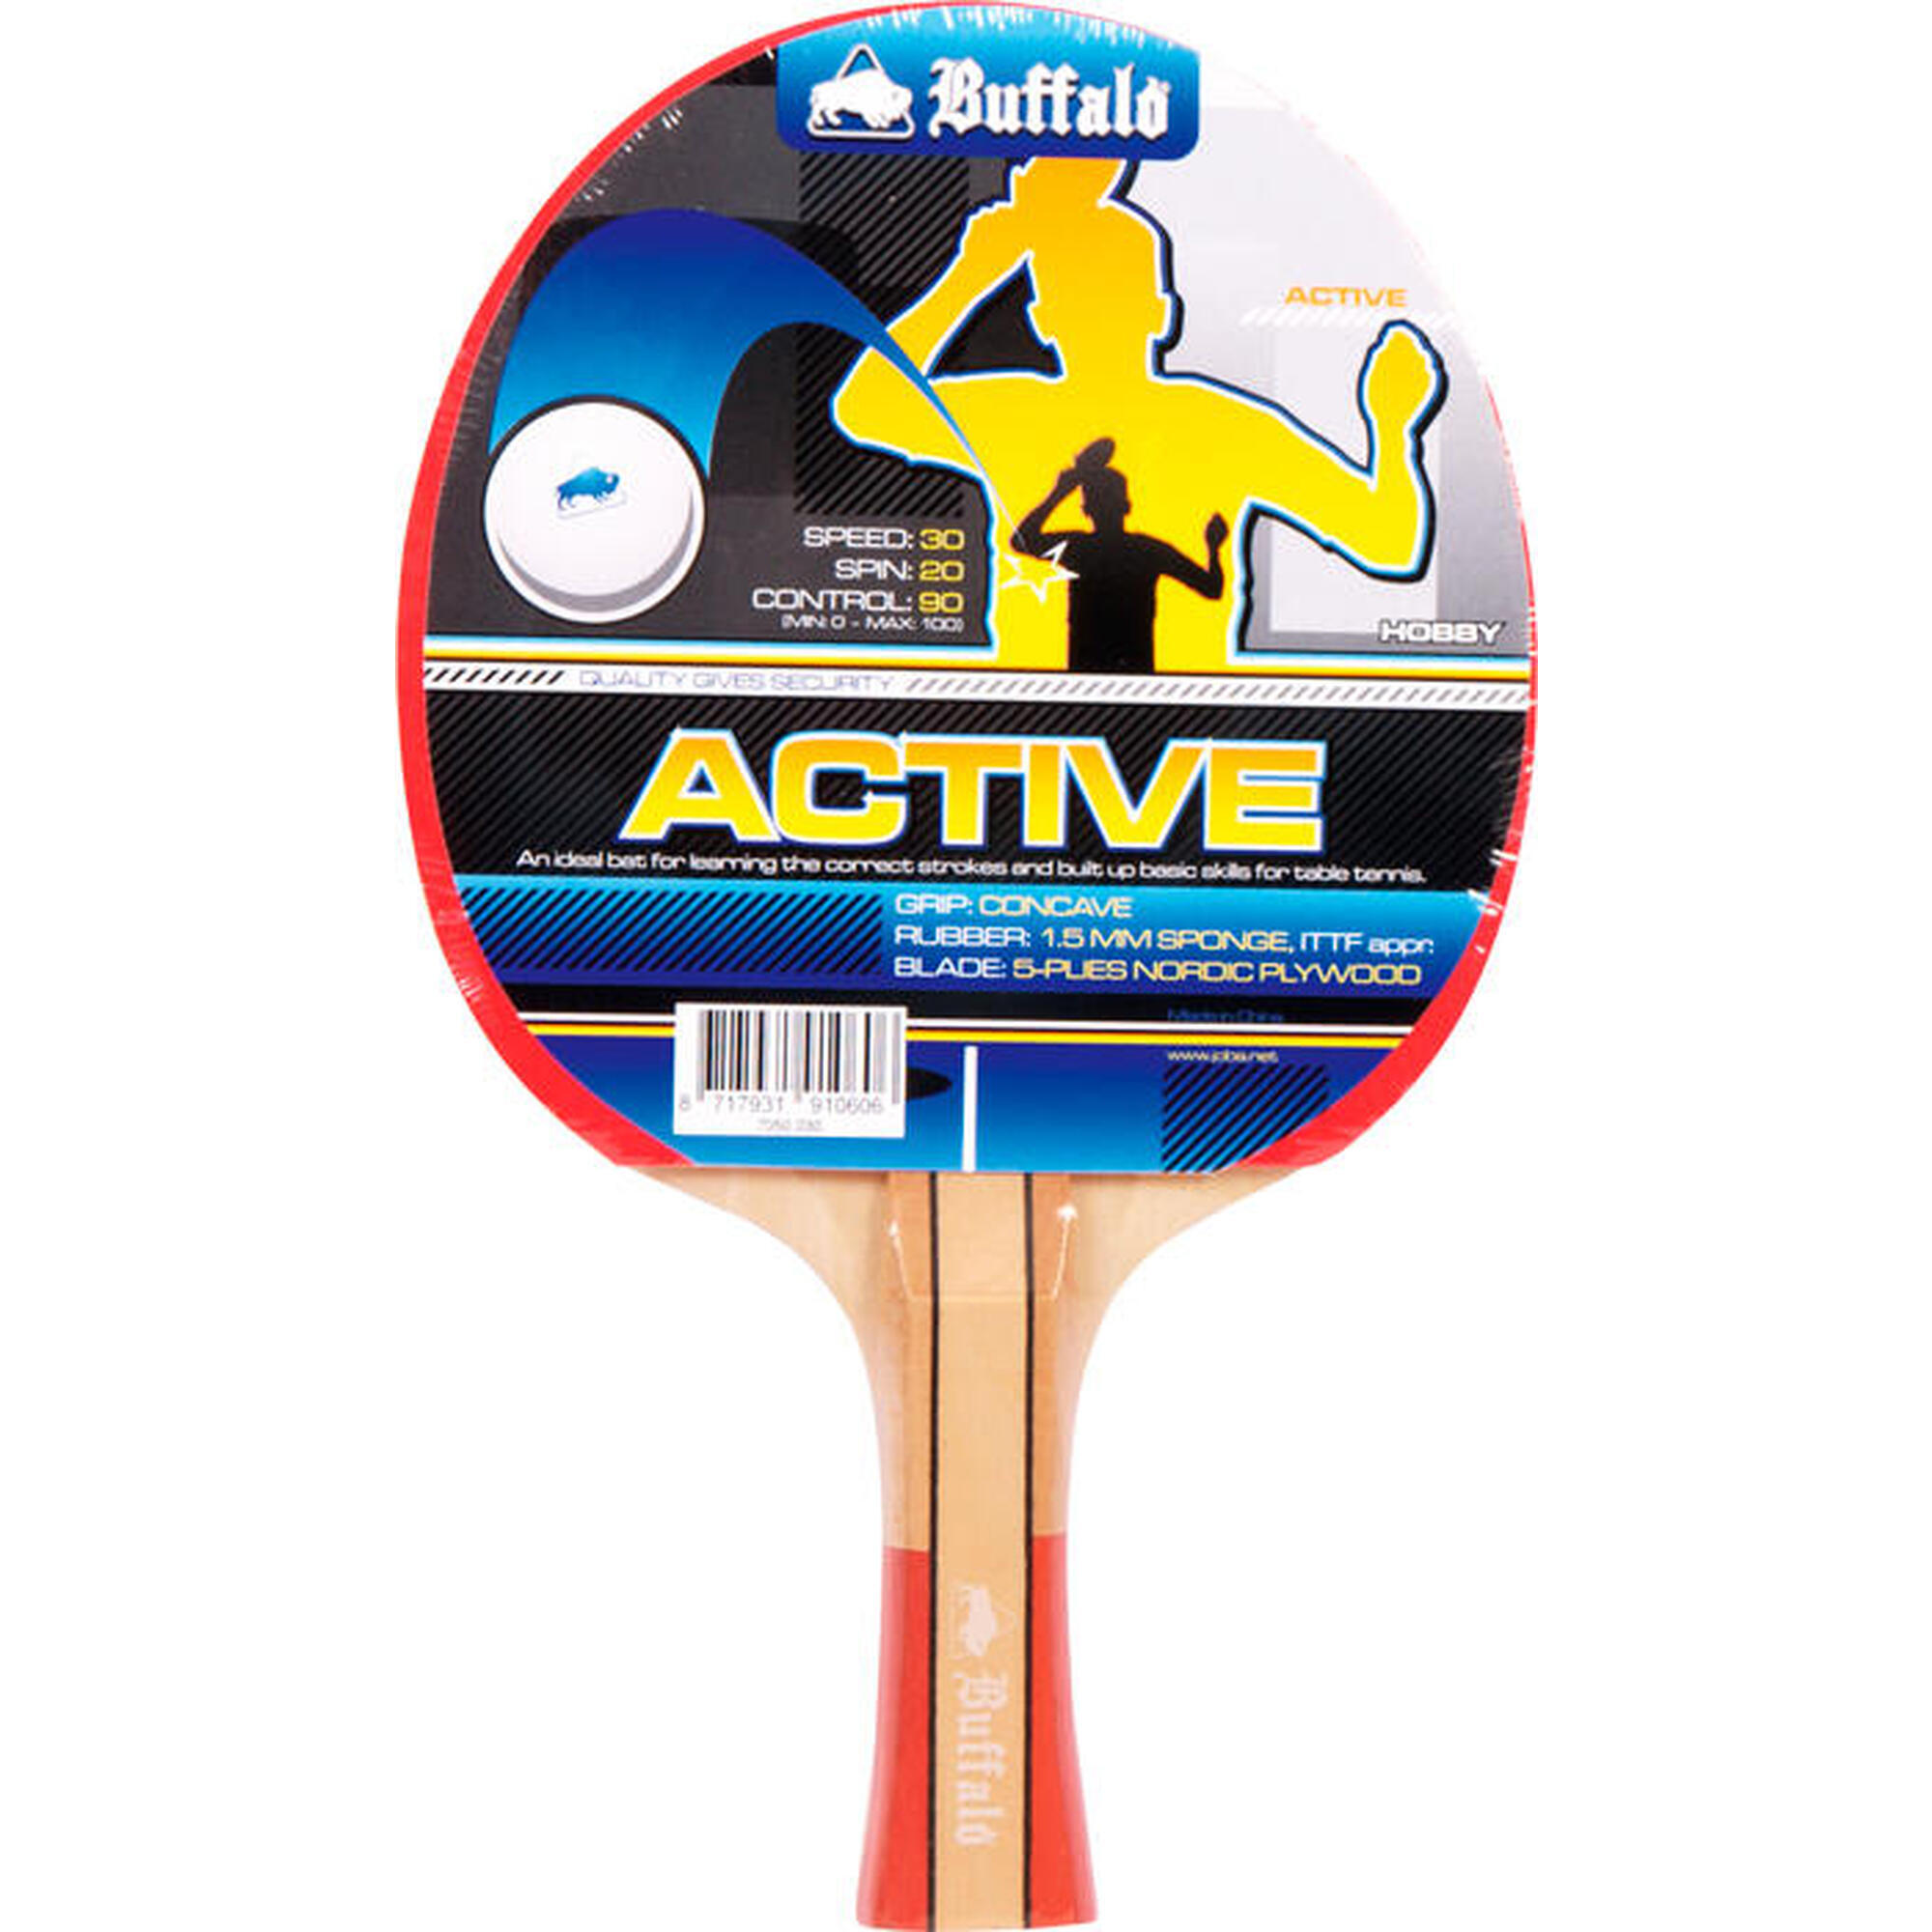 Raquete de Ping Pong Buffalo Active